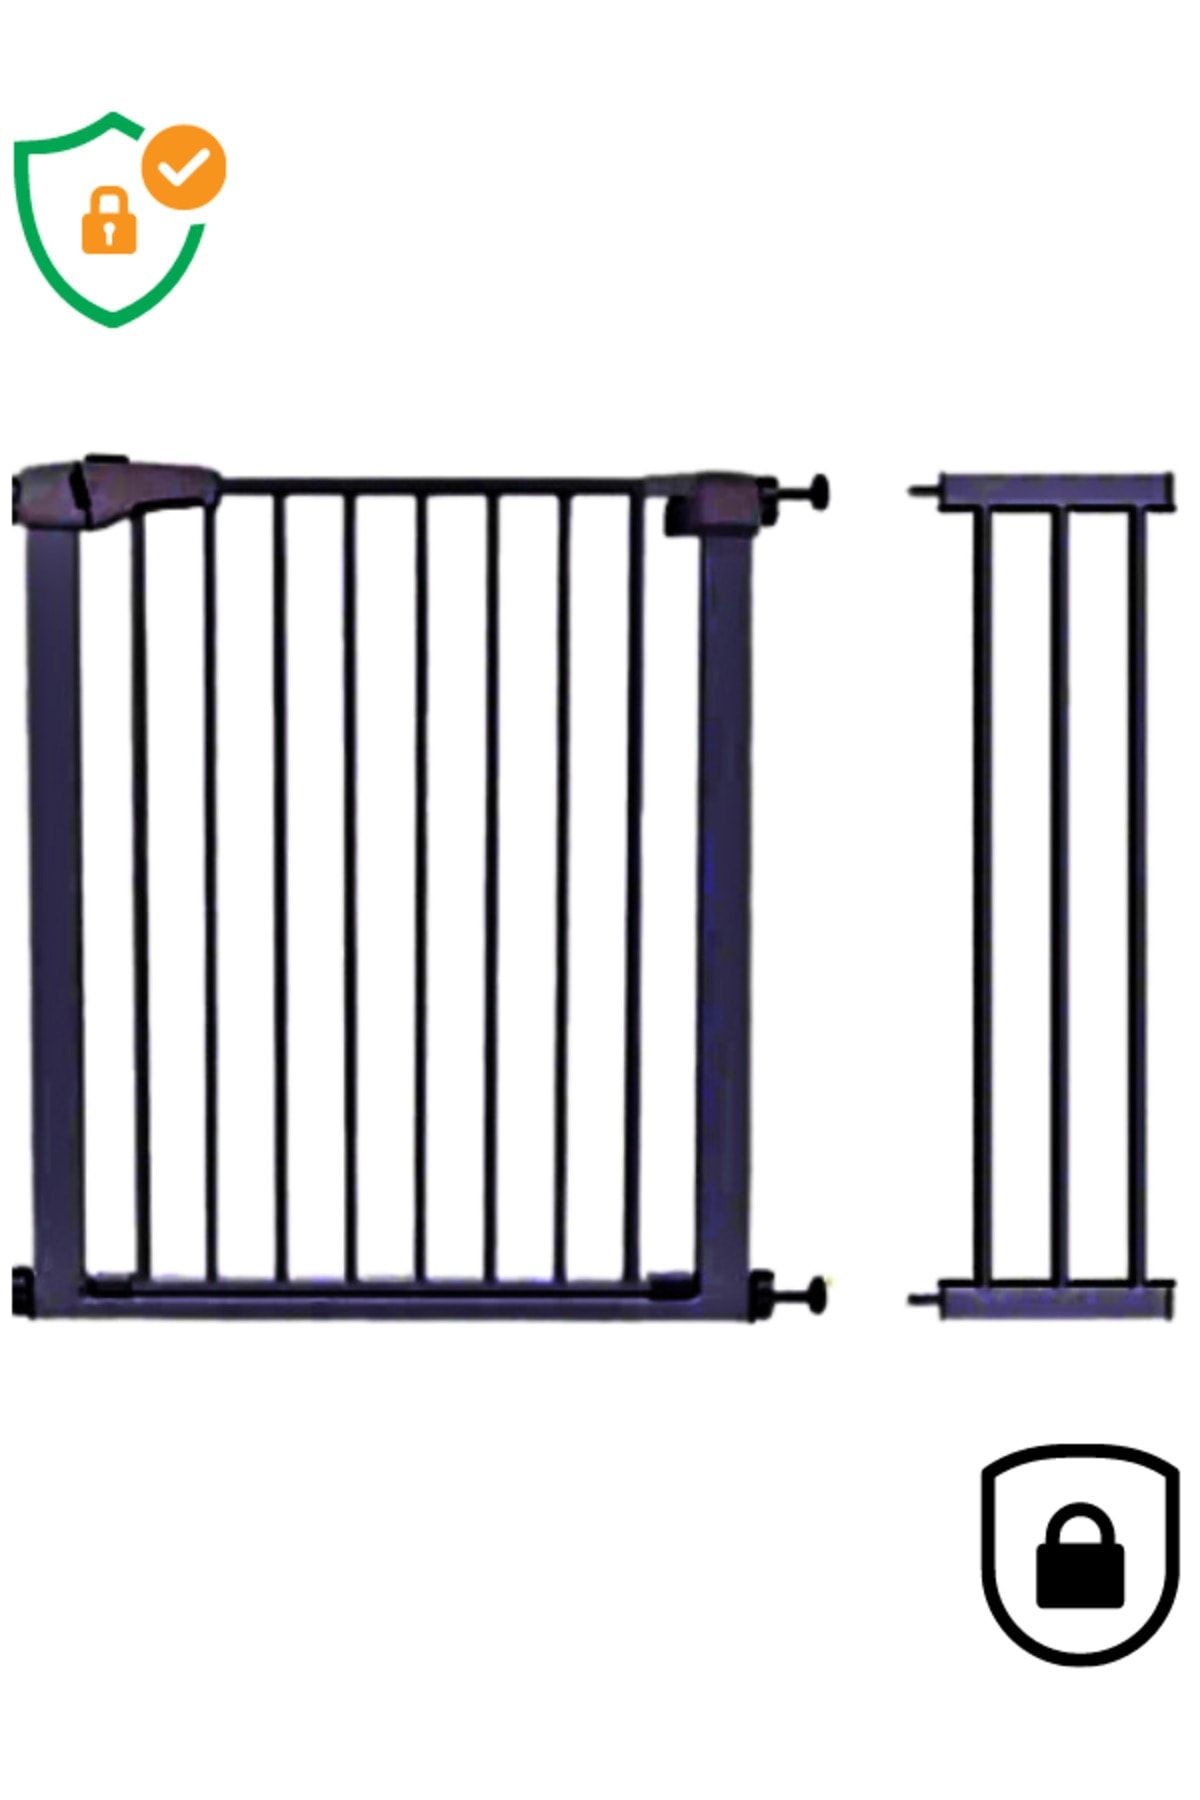 AYVELLA Bebek Çocuk Güvenlik Kapısı 75 - 106 cm Genişllik Bariyer Kilitli Merdiven Korumalığı Emniyetli